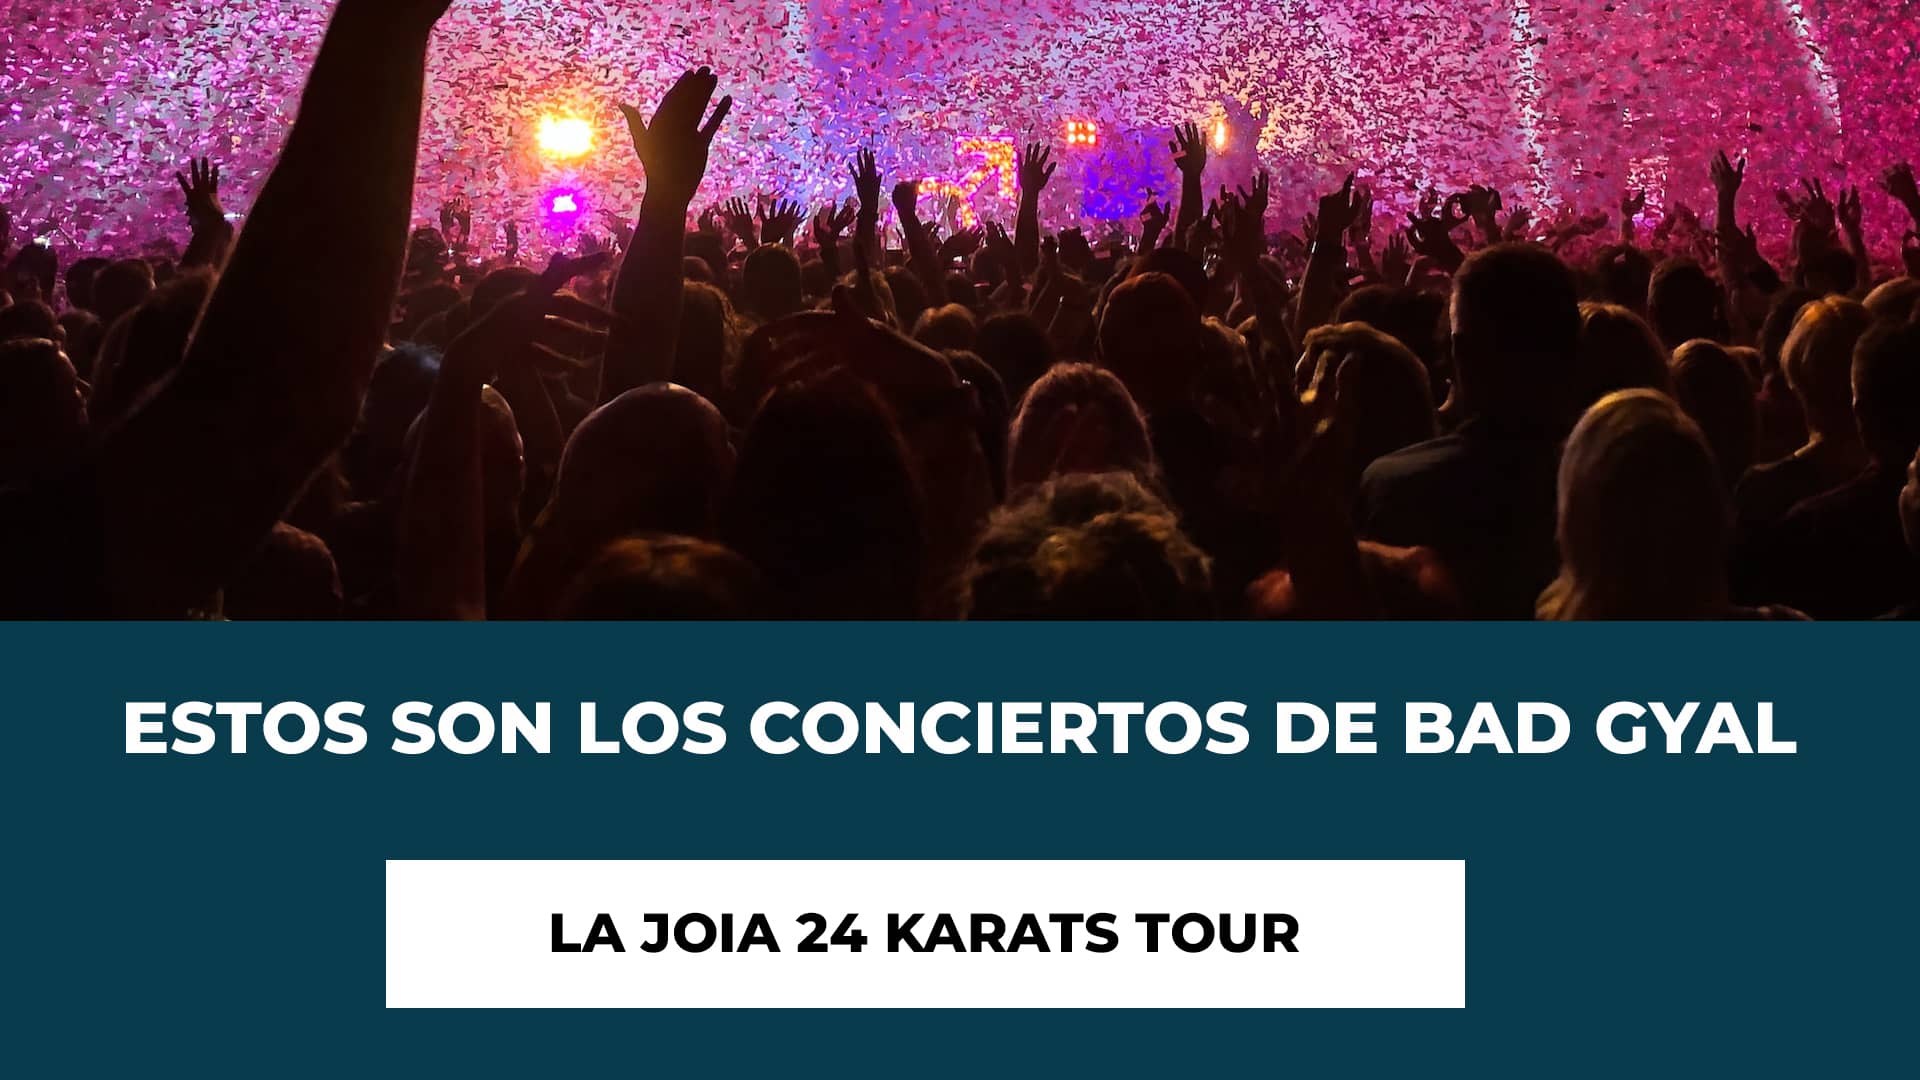 Estos son los conciertos de Bad Gyal La Joia 24 Karats Tour - Fechas, Ciudades y Recintos - Presentación álbum debut - Entradas